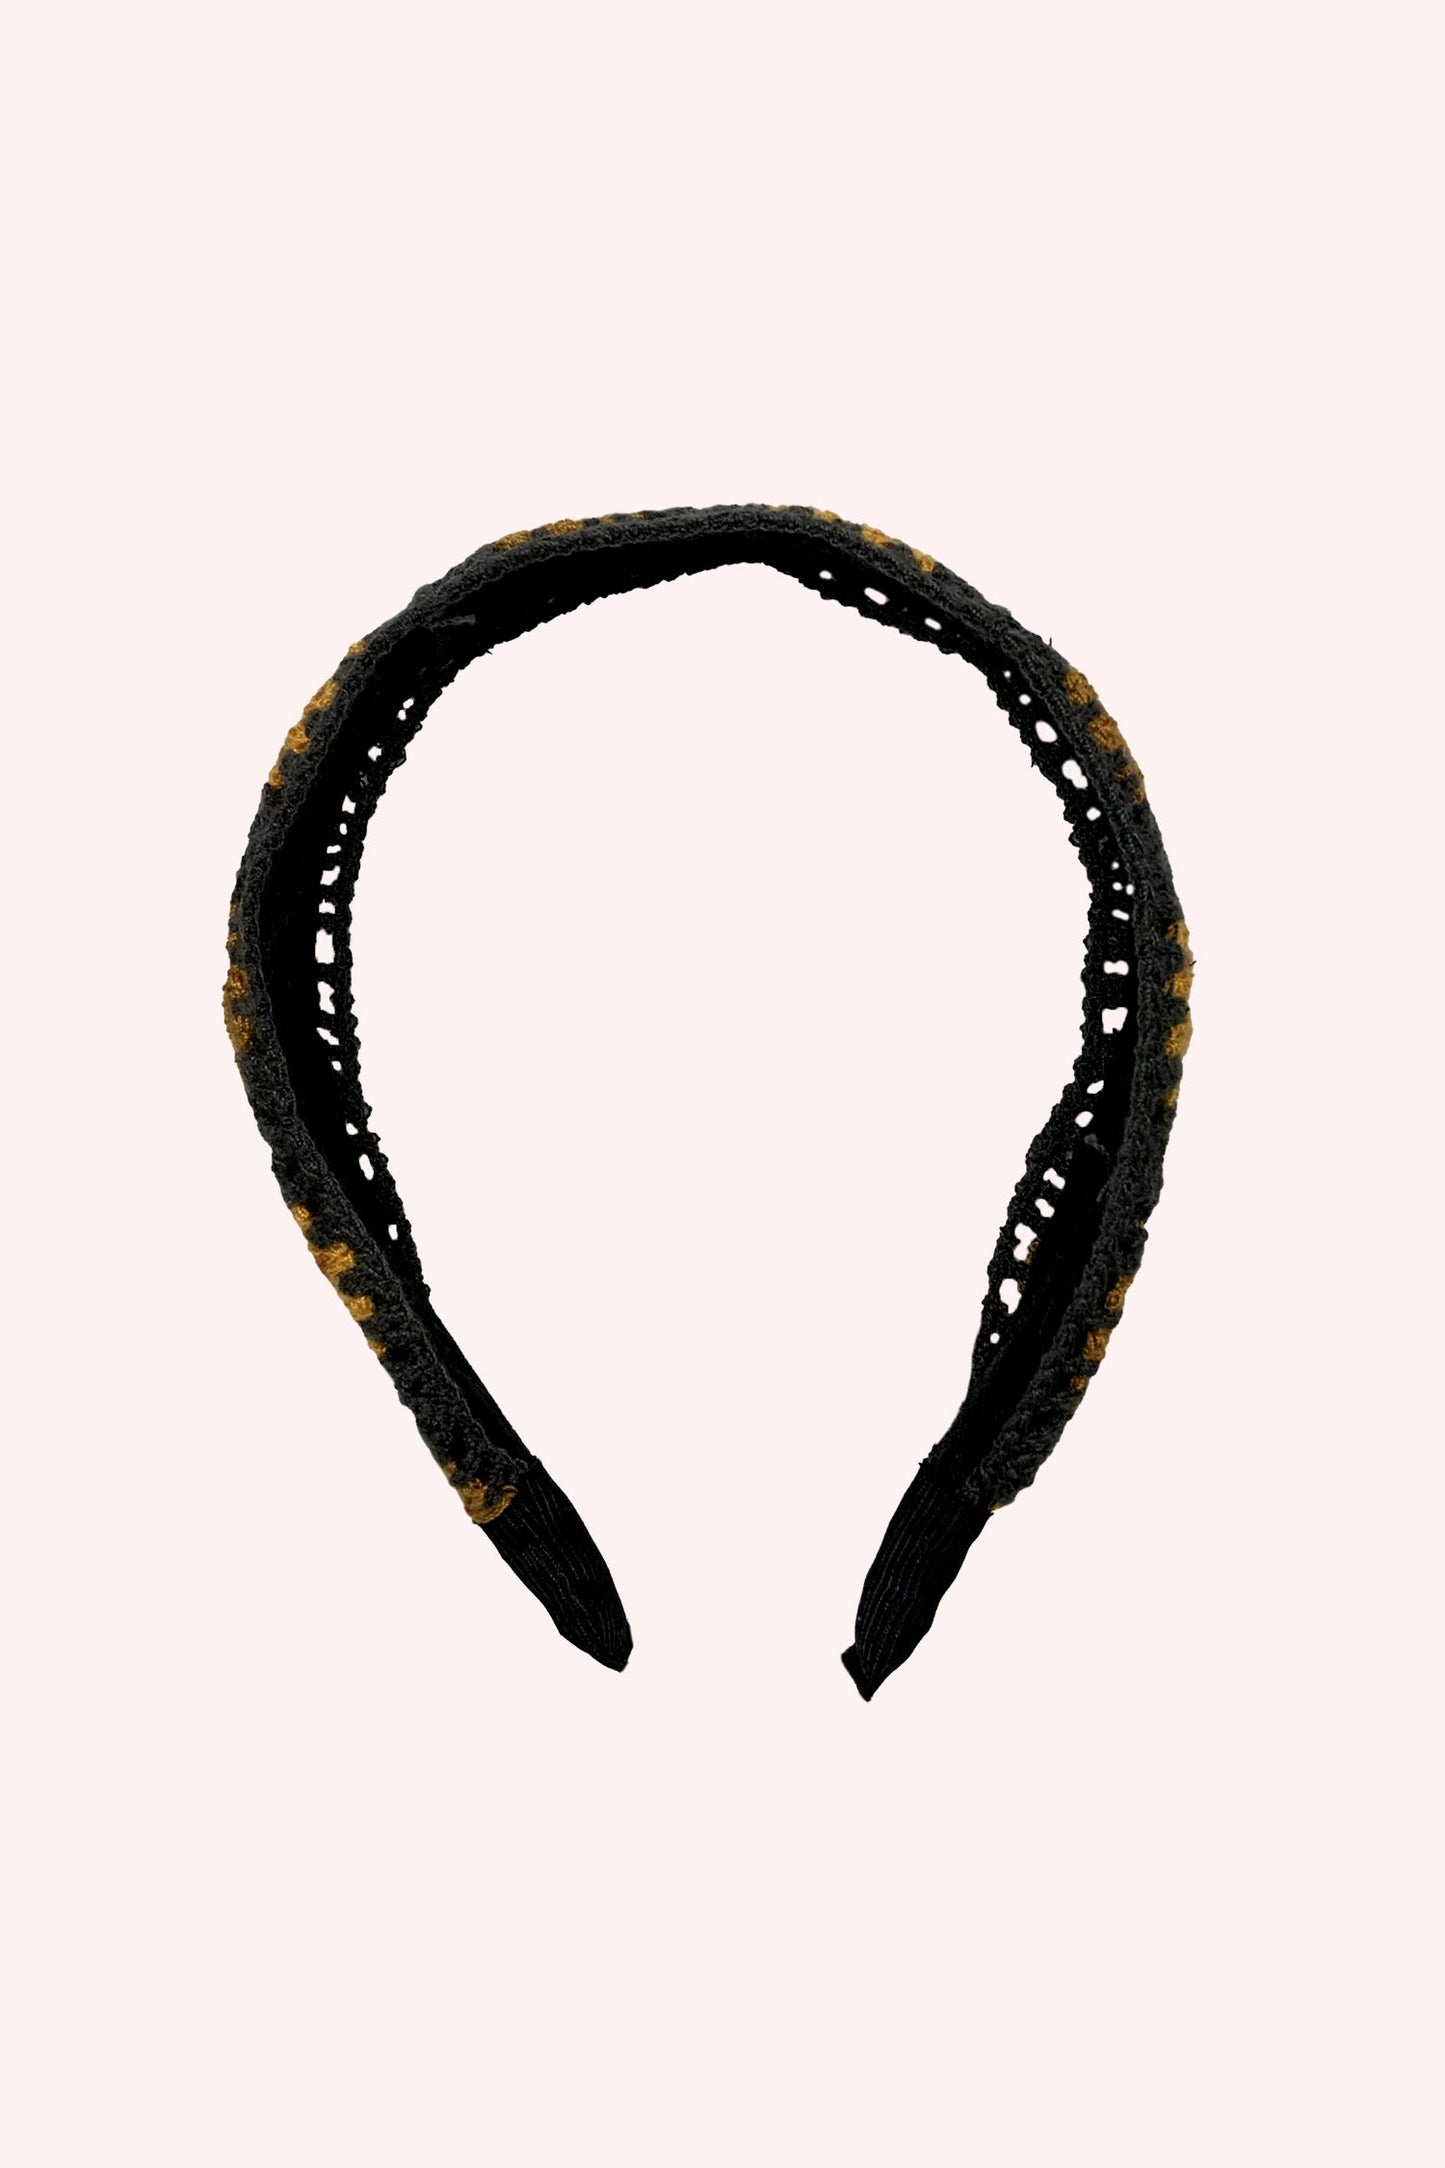 Floral Crochet Play Headband Orange Multi on black, omega shape